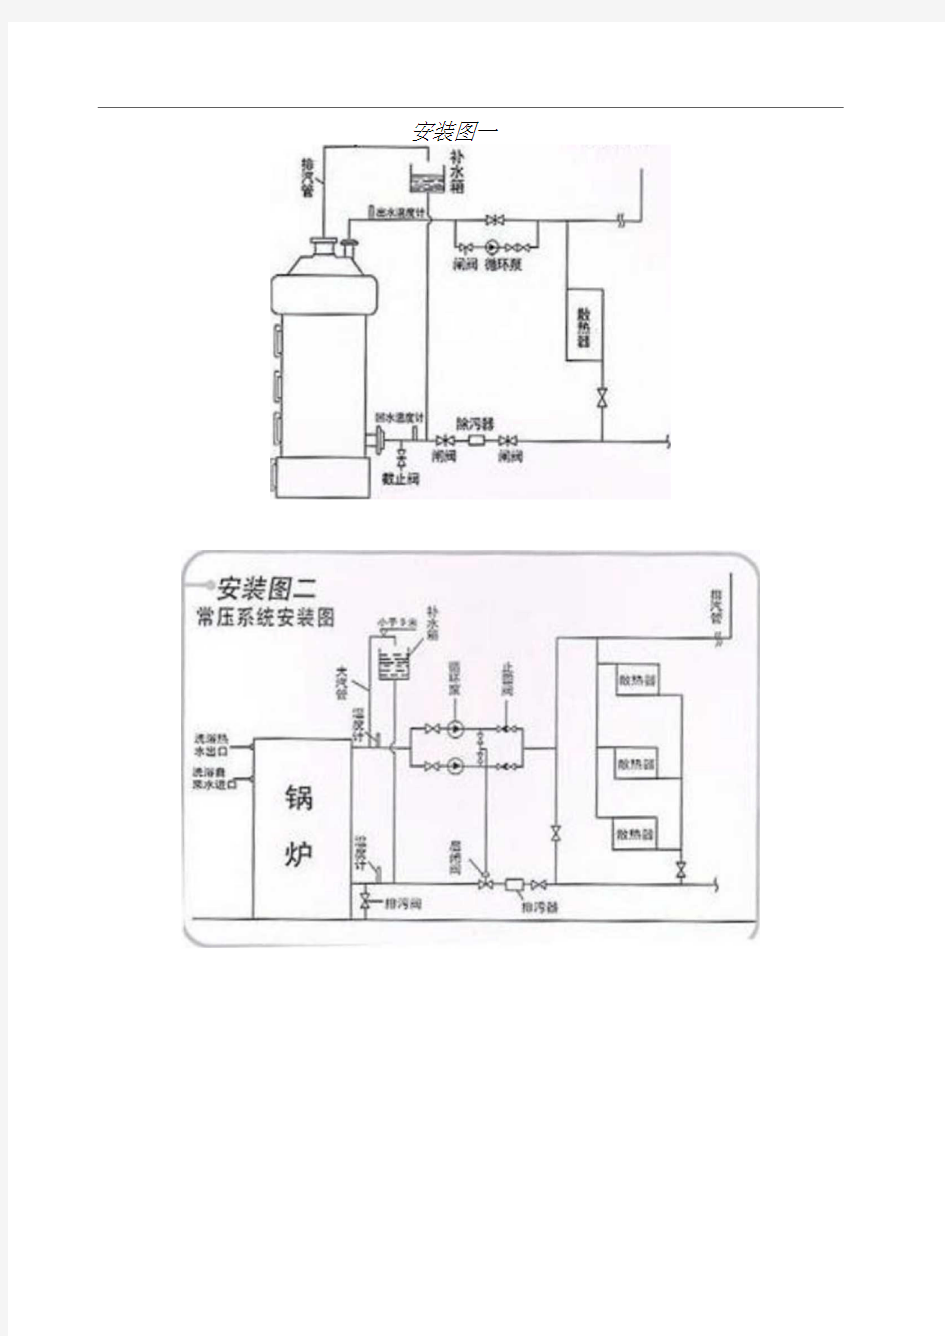 常压热水锅炉安装系统图